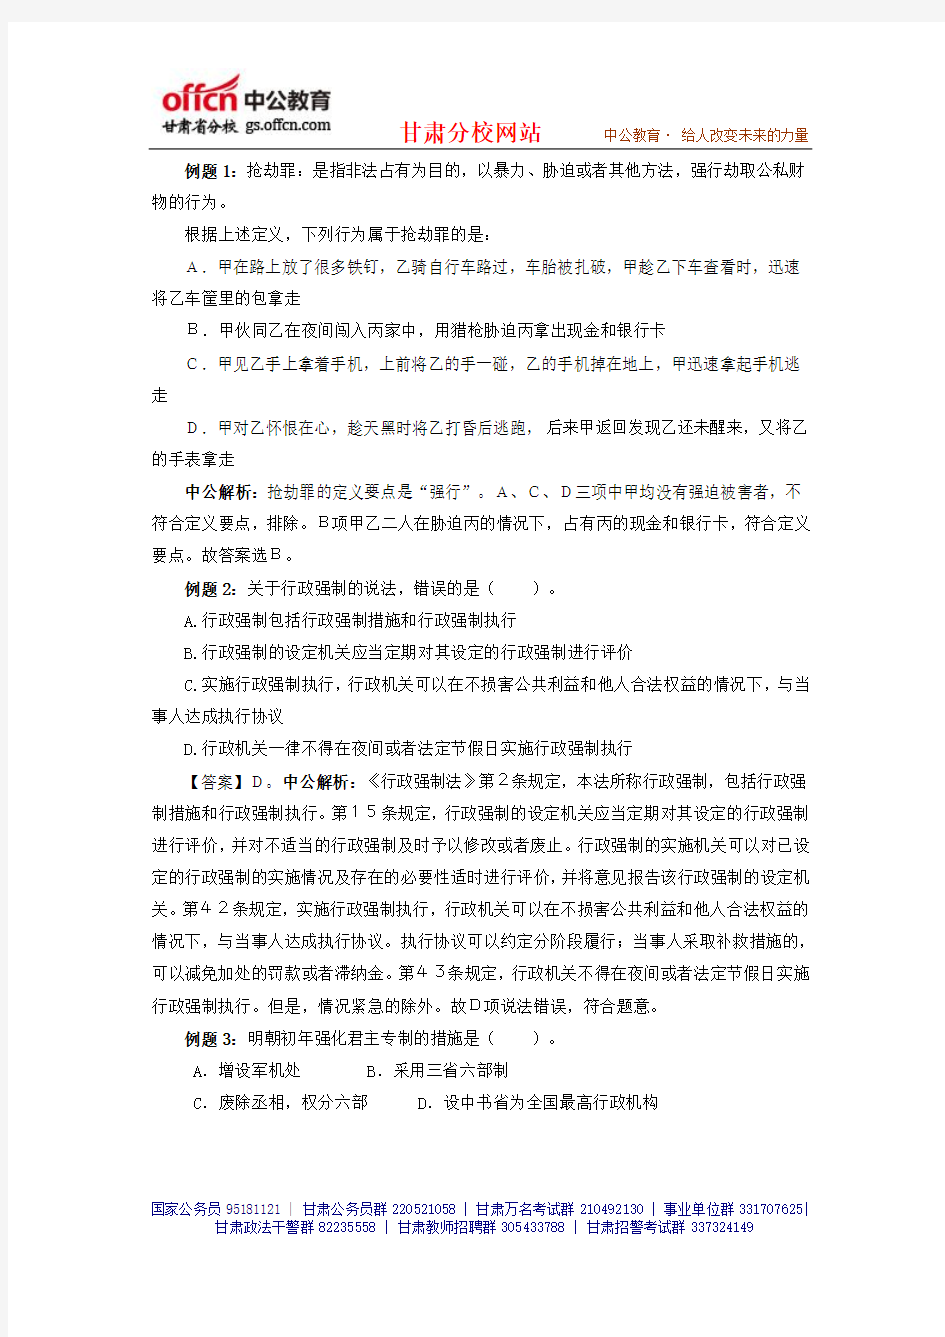 2014年甘肃大学生村官考试模拟真题及答案解析- (71)